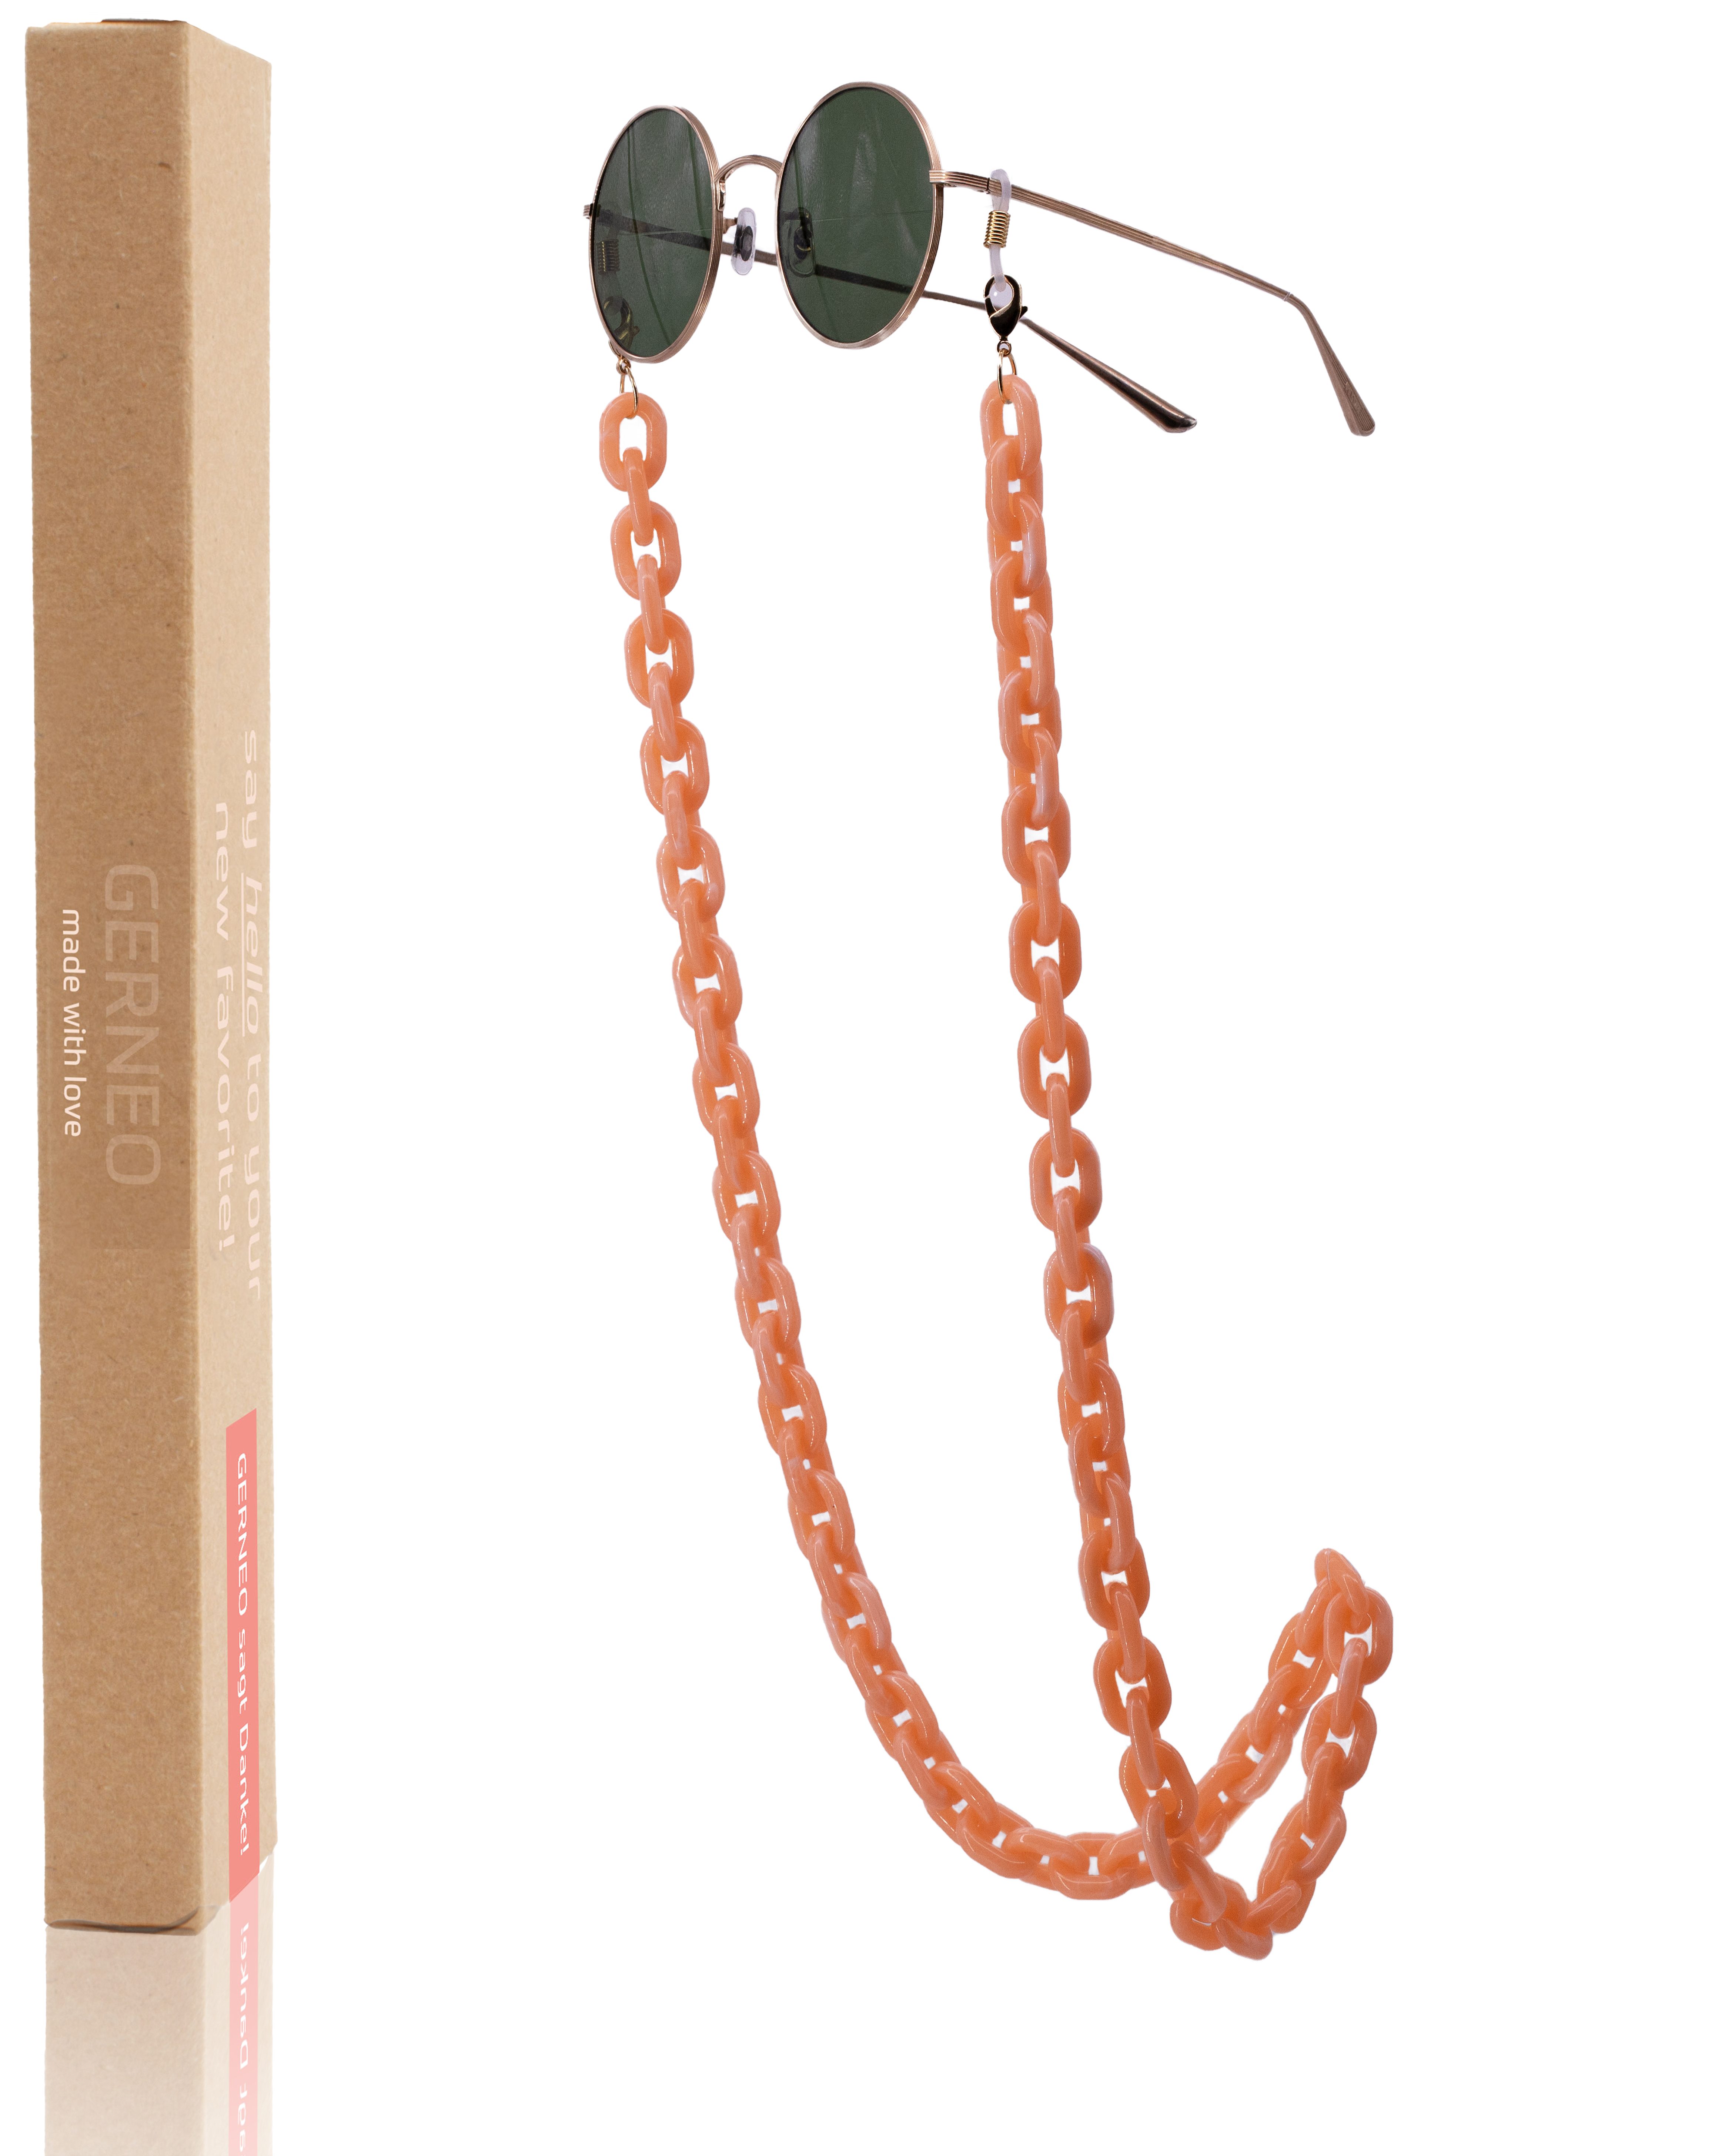 GERNEO Brillenkette ERNEO® - Puglia – Maskenhalter & Brillenkette Gold aus Acryl, korrosionsbeständig einzigartig hochwertige Brillen Kette Brillenband Rosé-Beige